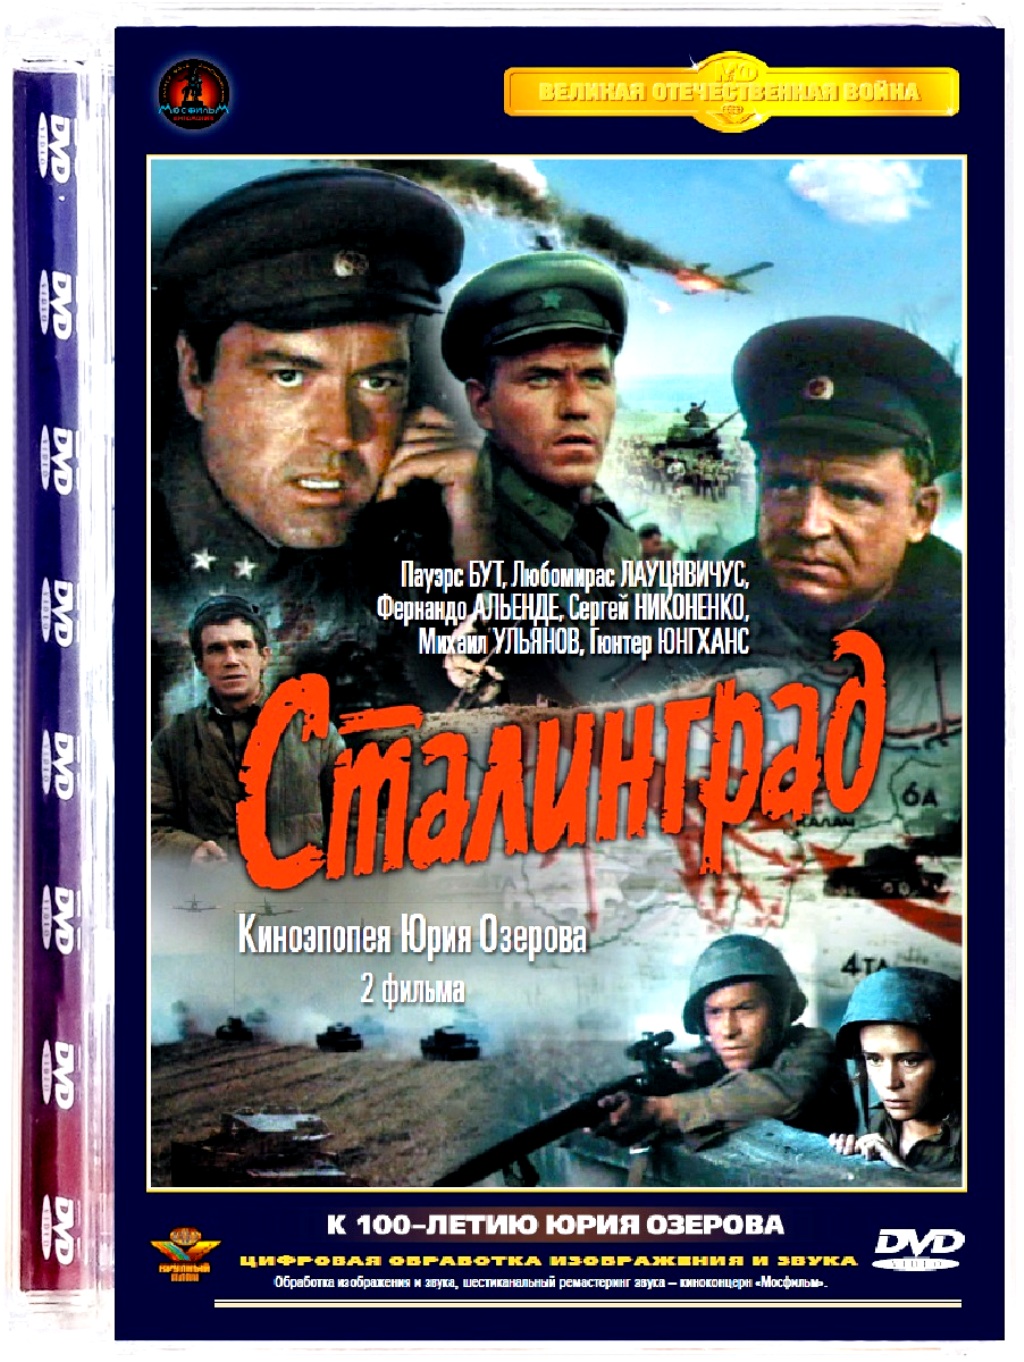 Сталинград DVD)